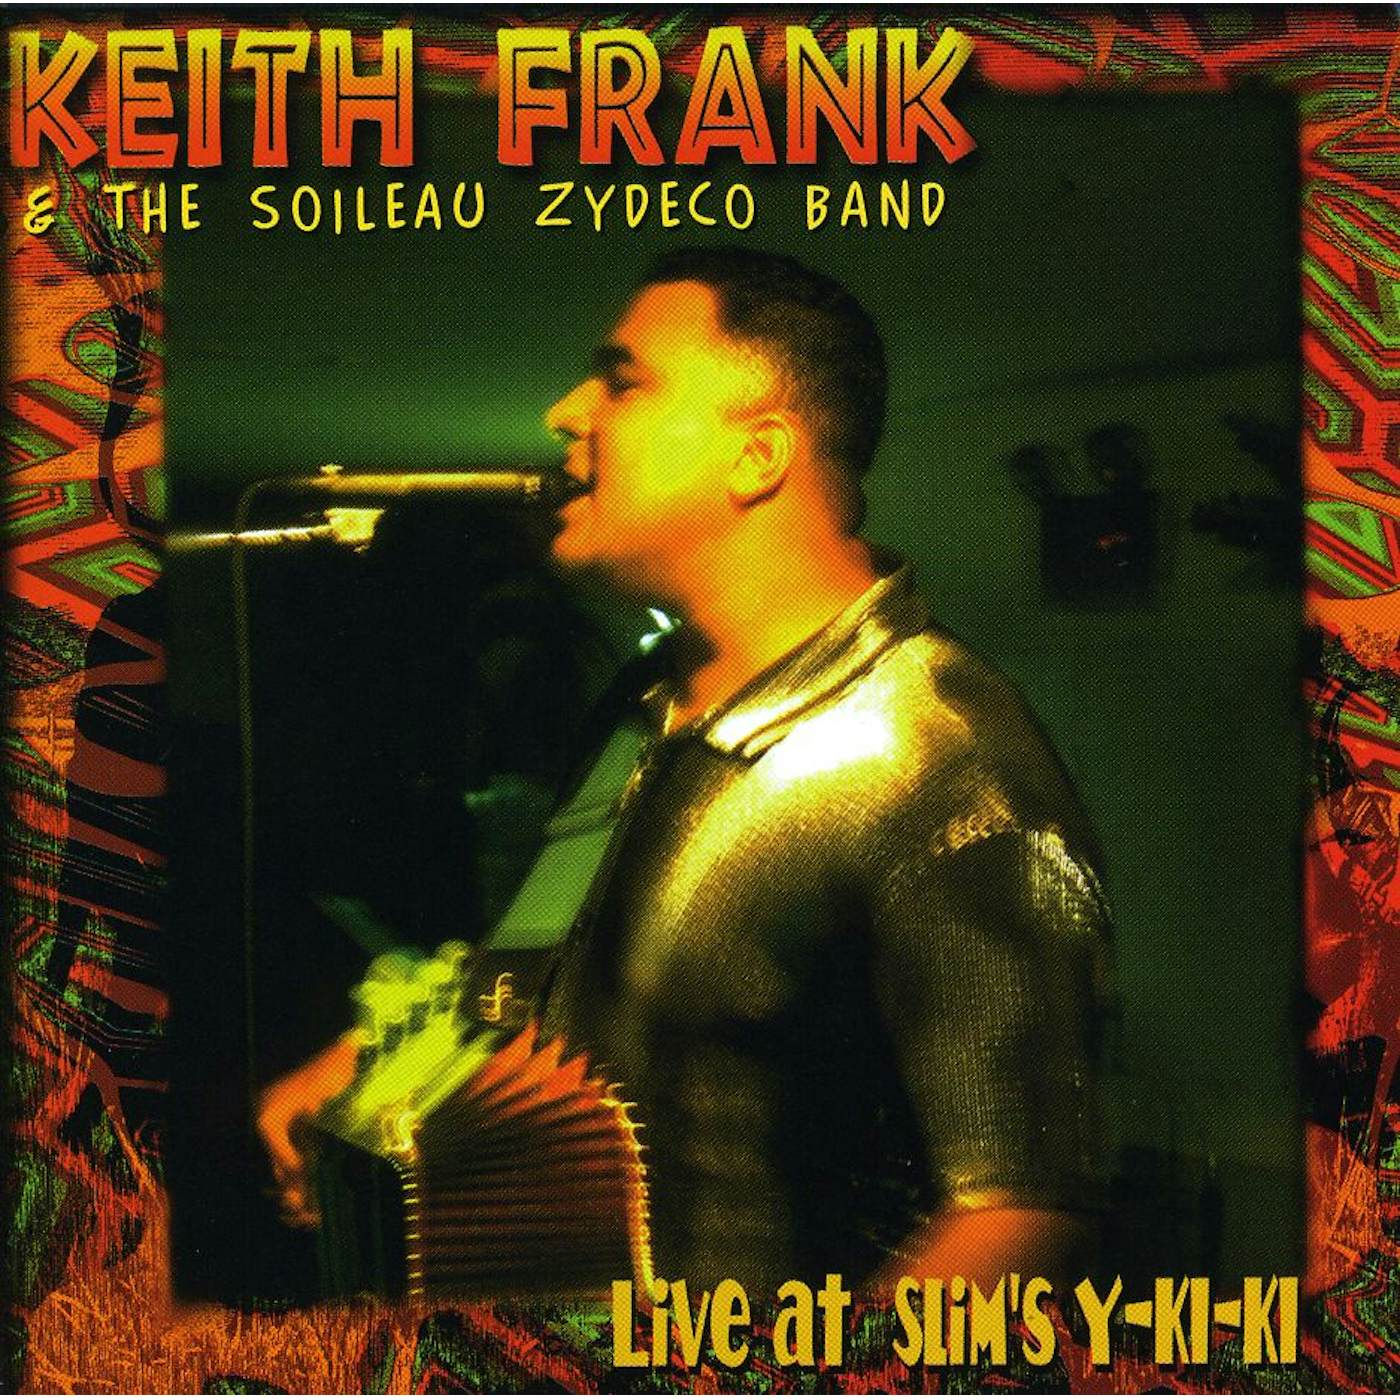 Keith Frank LIVE AT SLIM'S Y-KI-KI CD